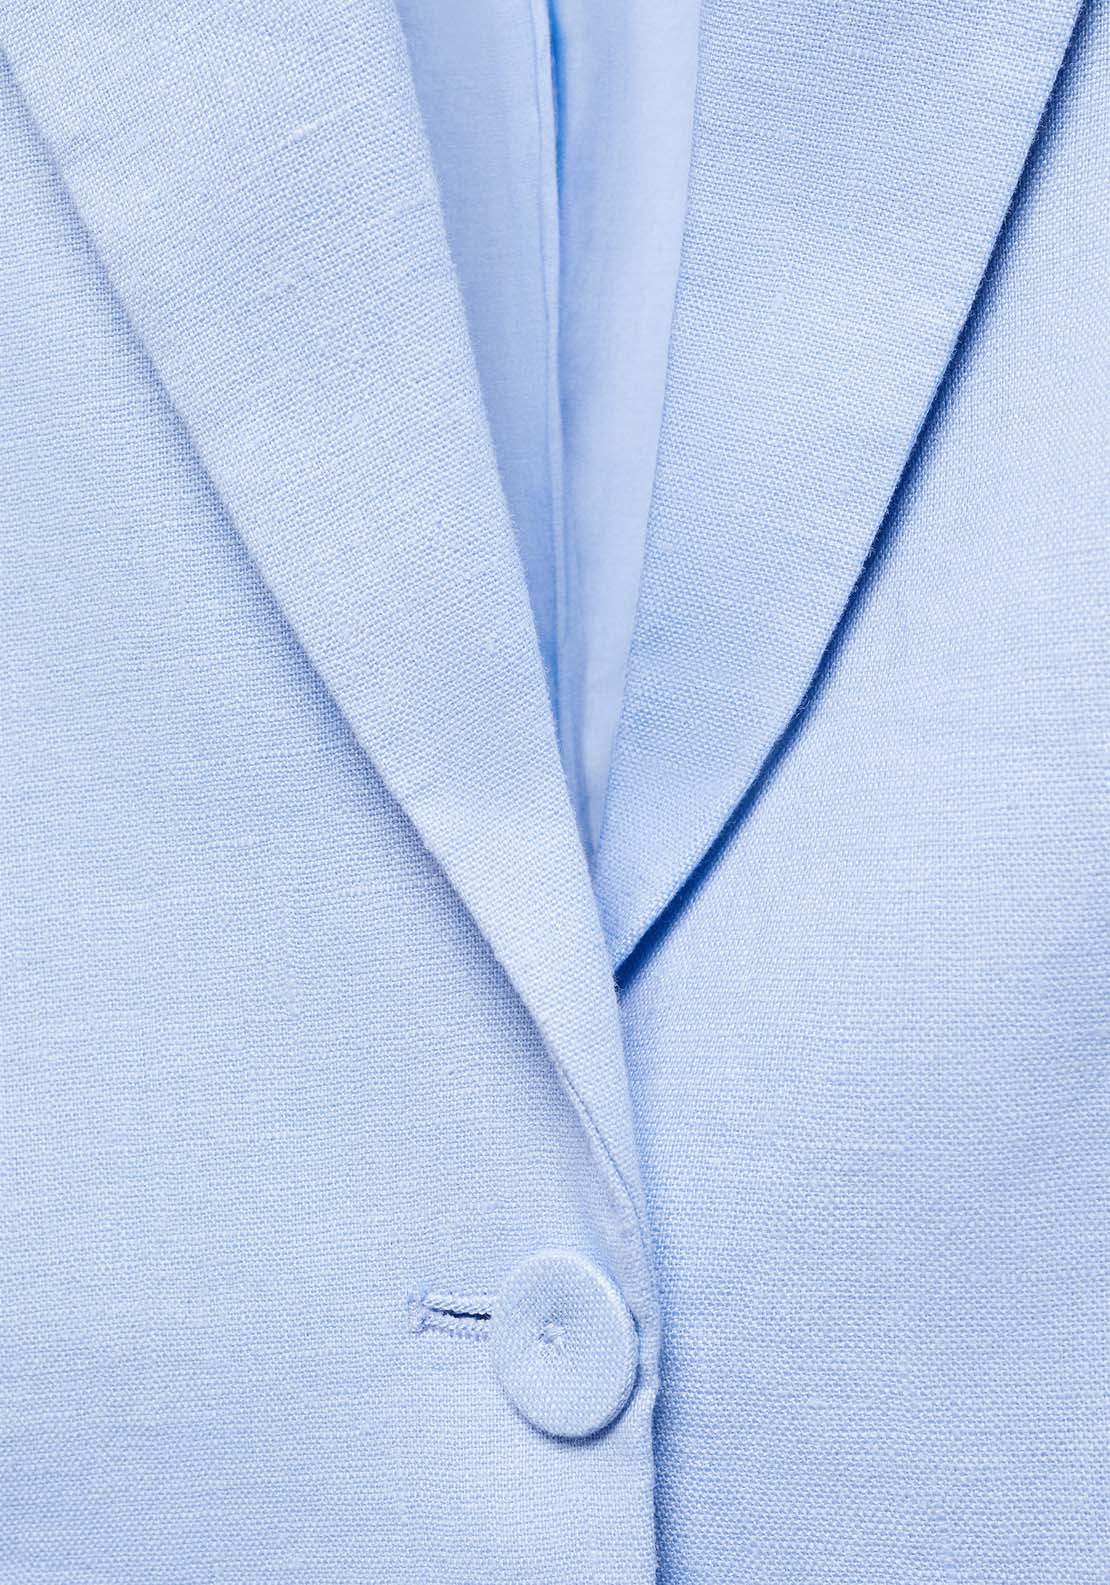 Mango Blazer suit 100% linen - Blue 5 Shaws Department Stores